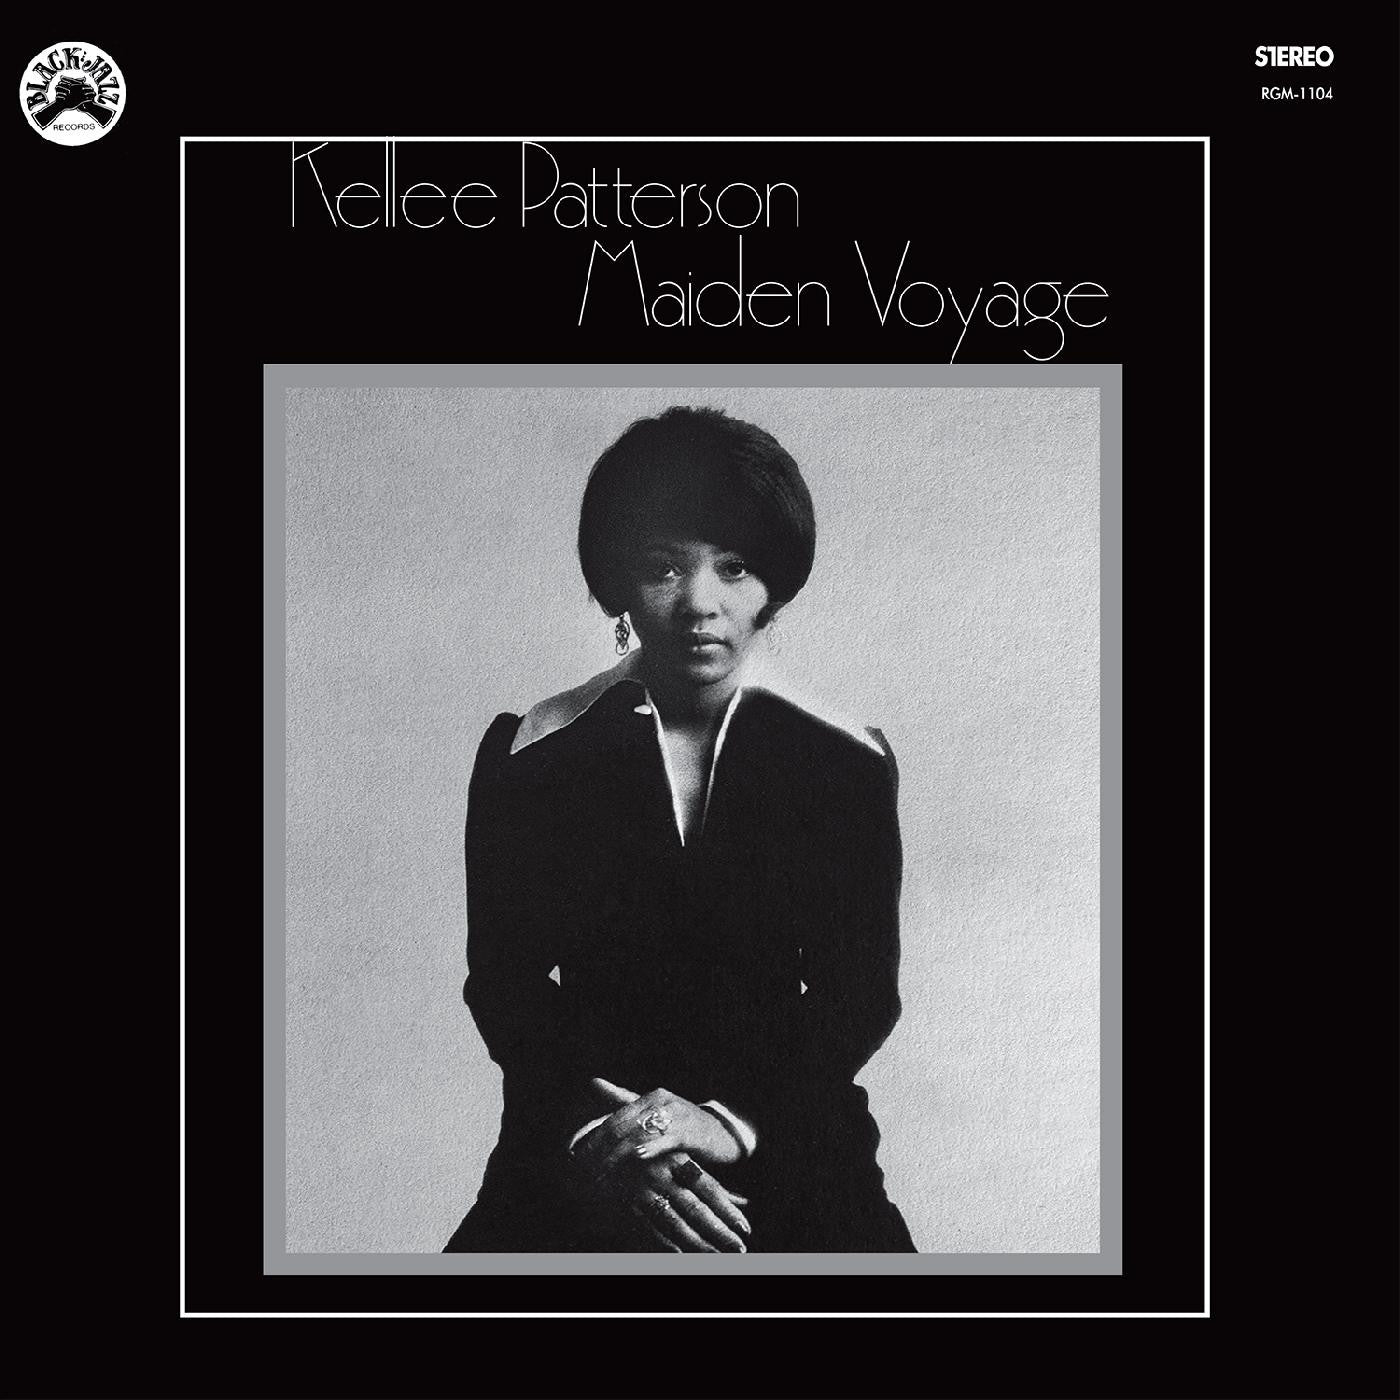 Patterson, Kellee – Maiden Voyage - New LP